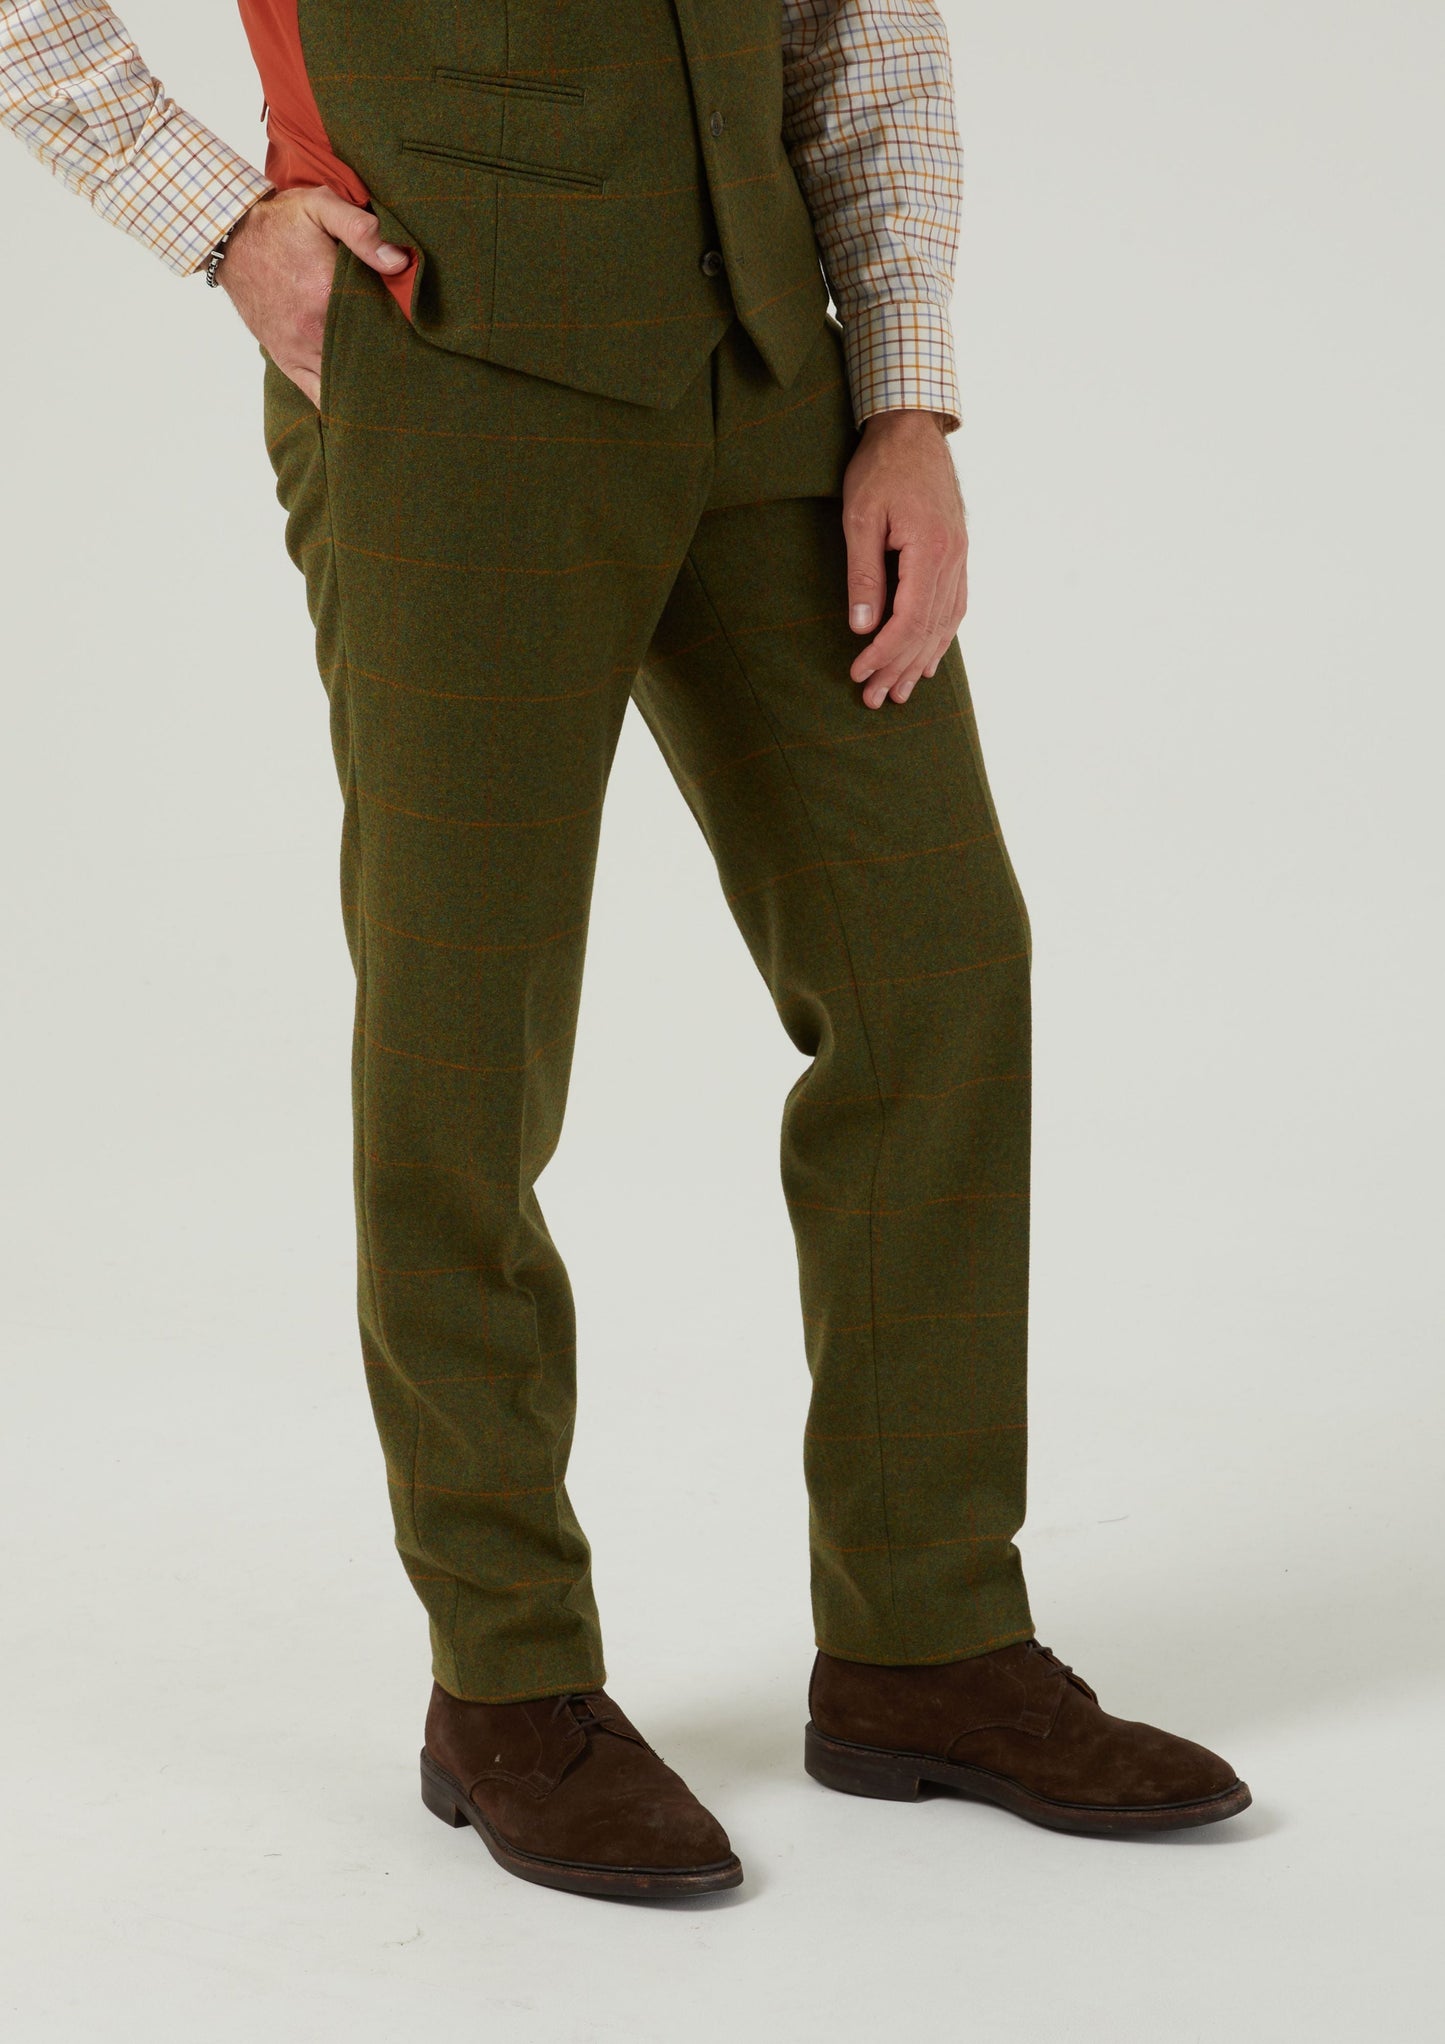 Combrook Men's Tweed Trousers In Maple - Regular Fit